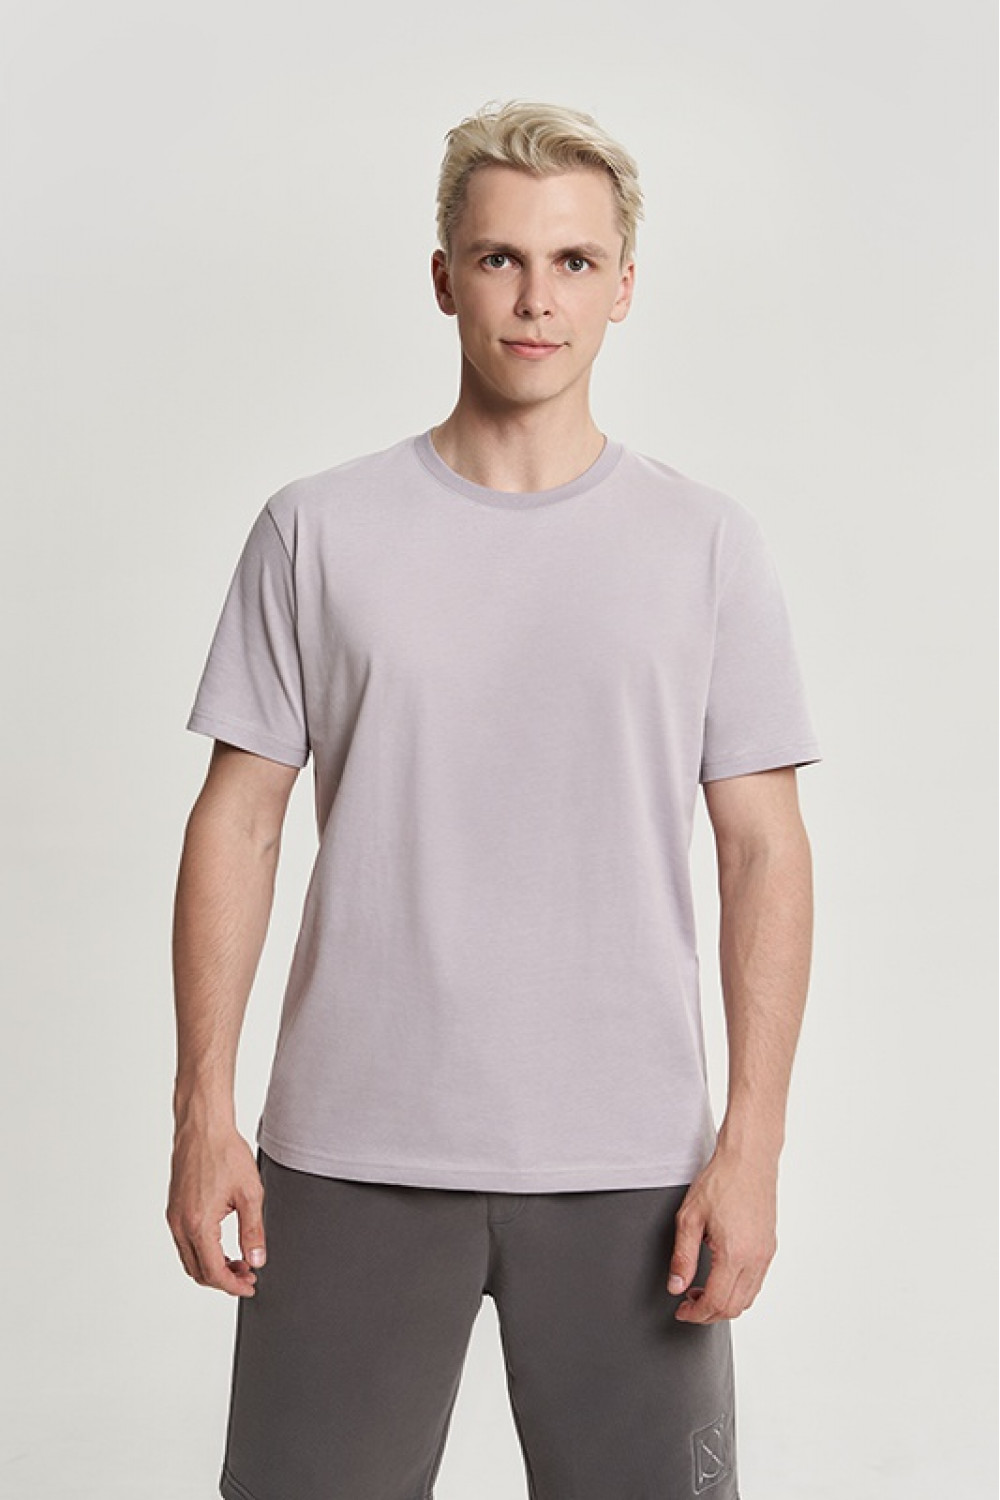 OXO-2157 Хлопковая футболка свободного кроя мужская. мод. 10, коллекция CARBON, OXO UNO